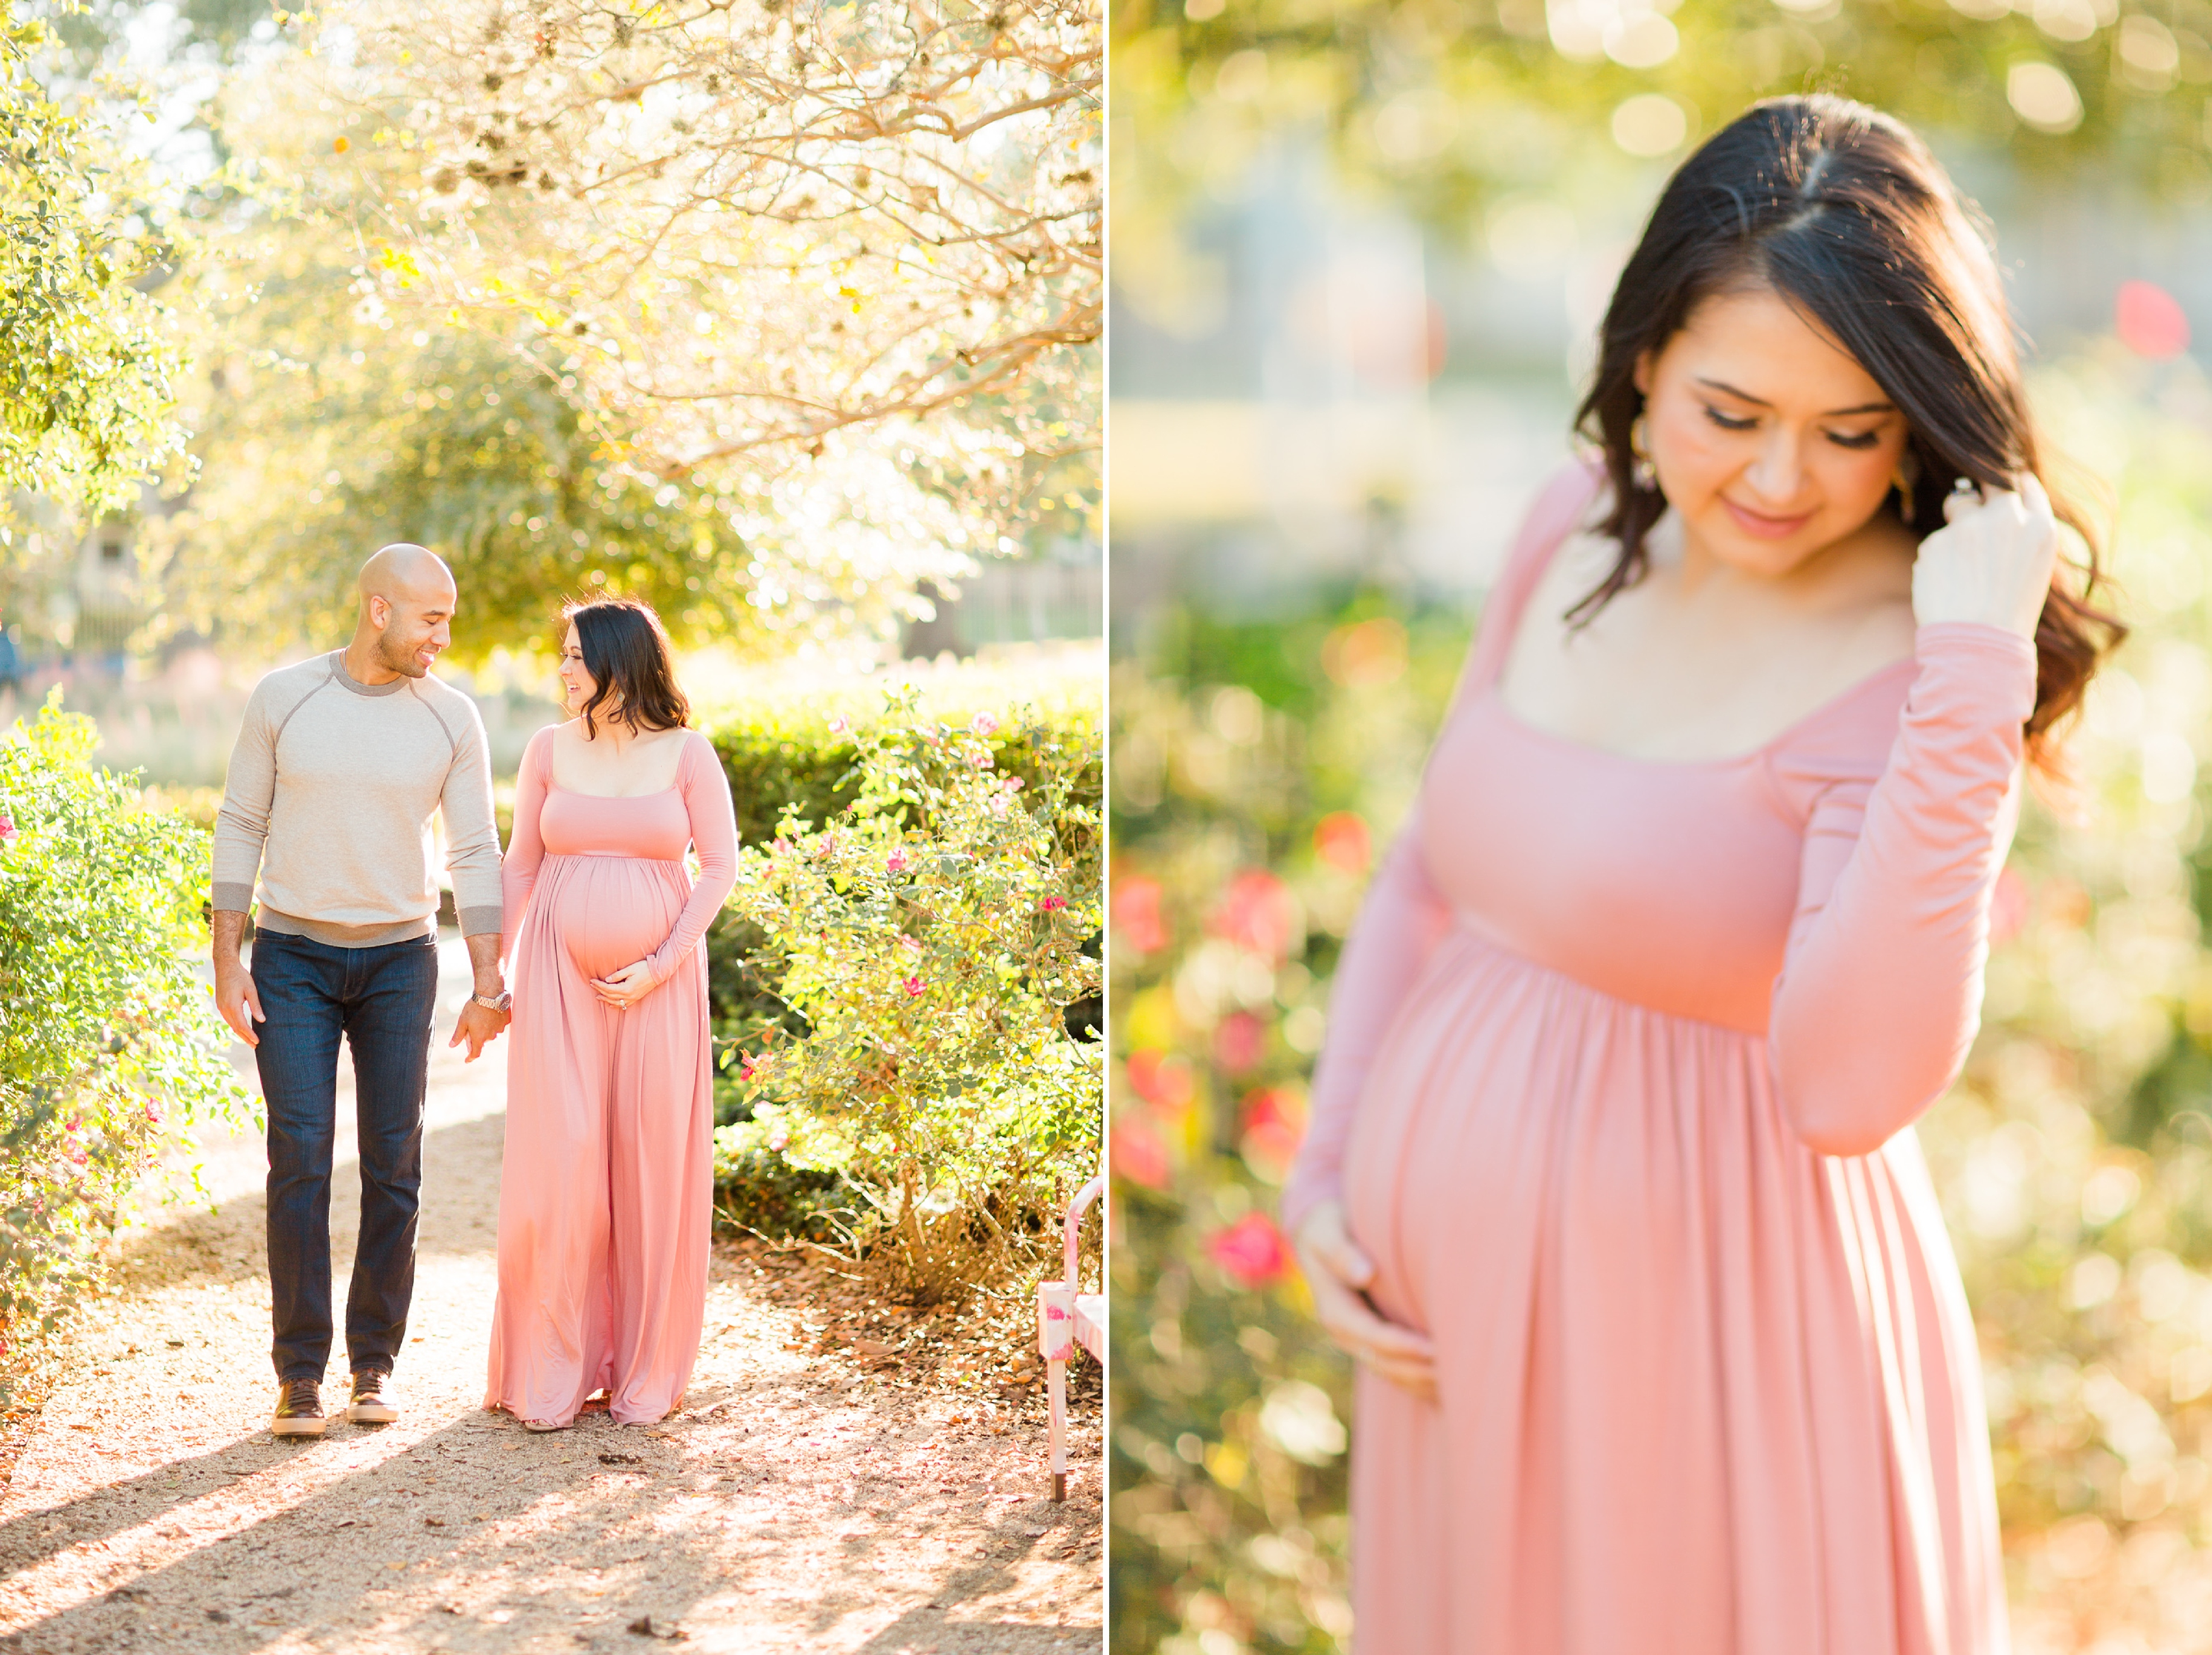 pinkblush maternity dress